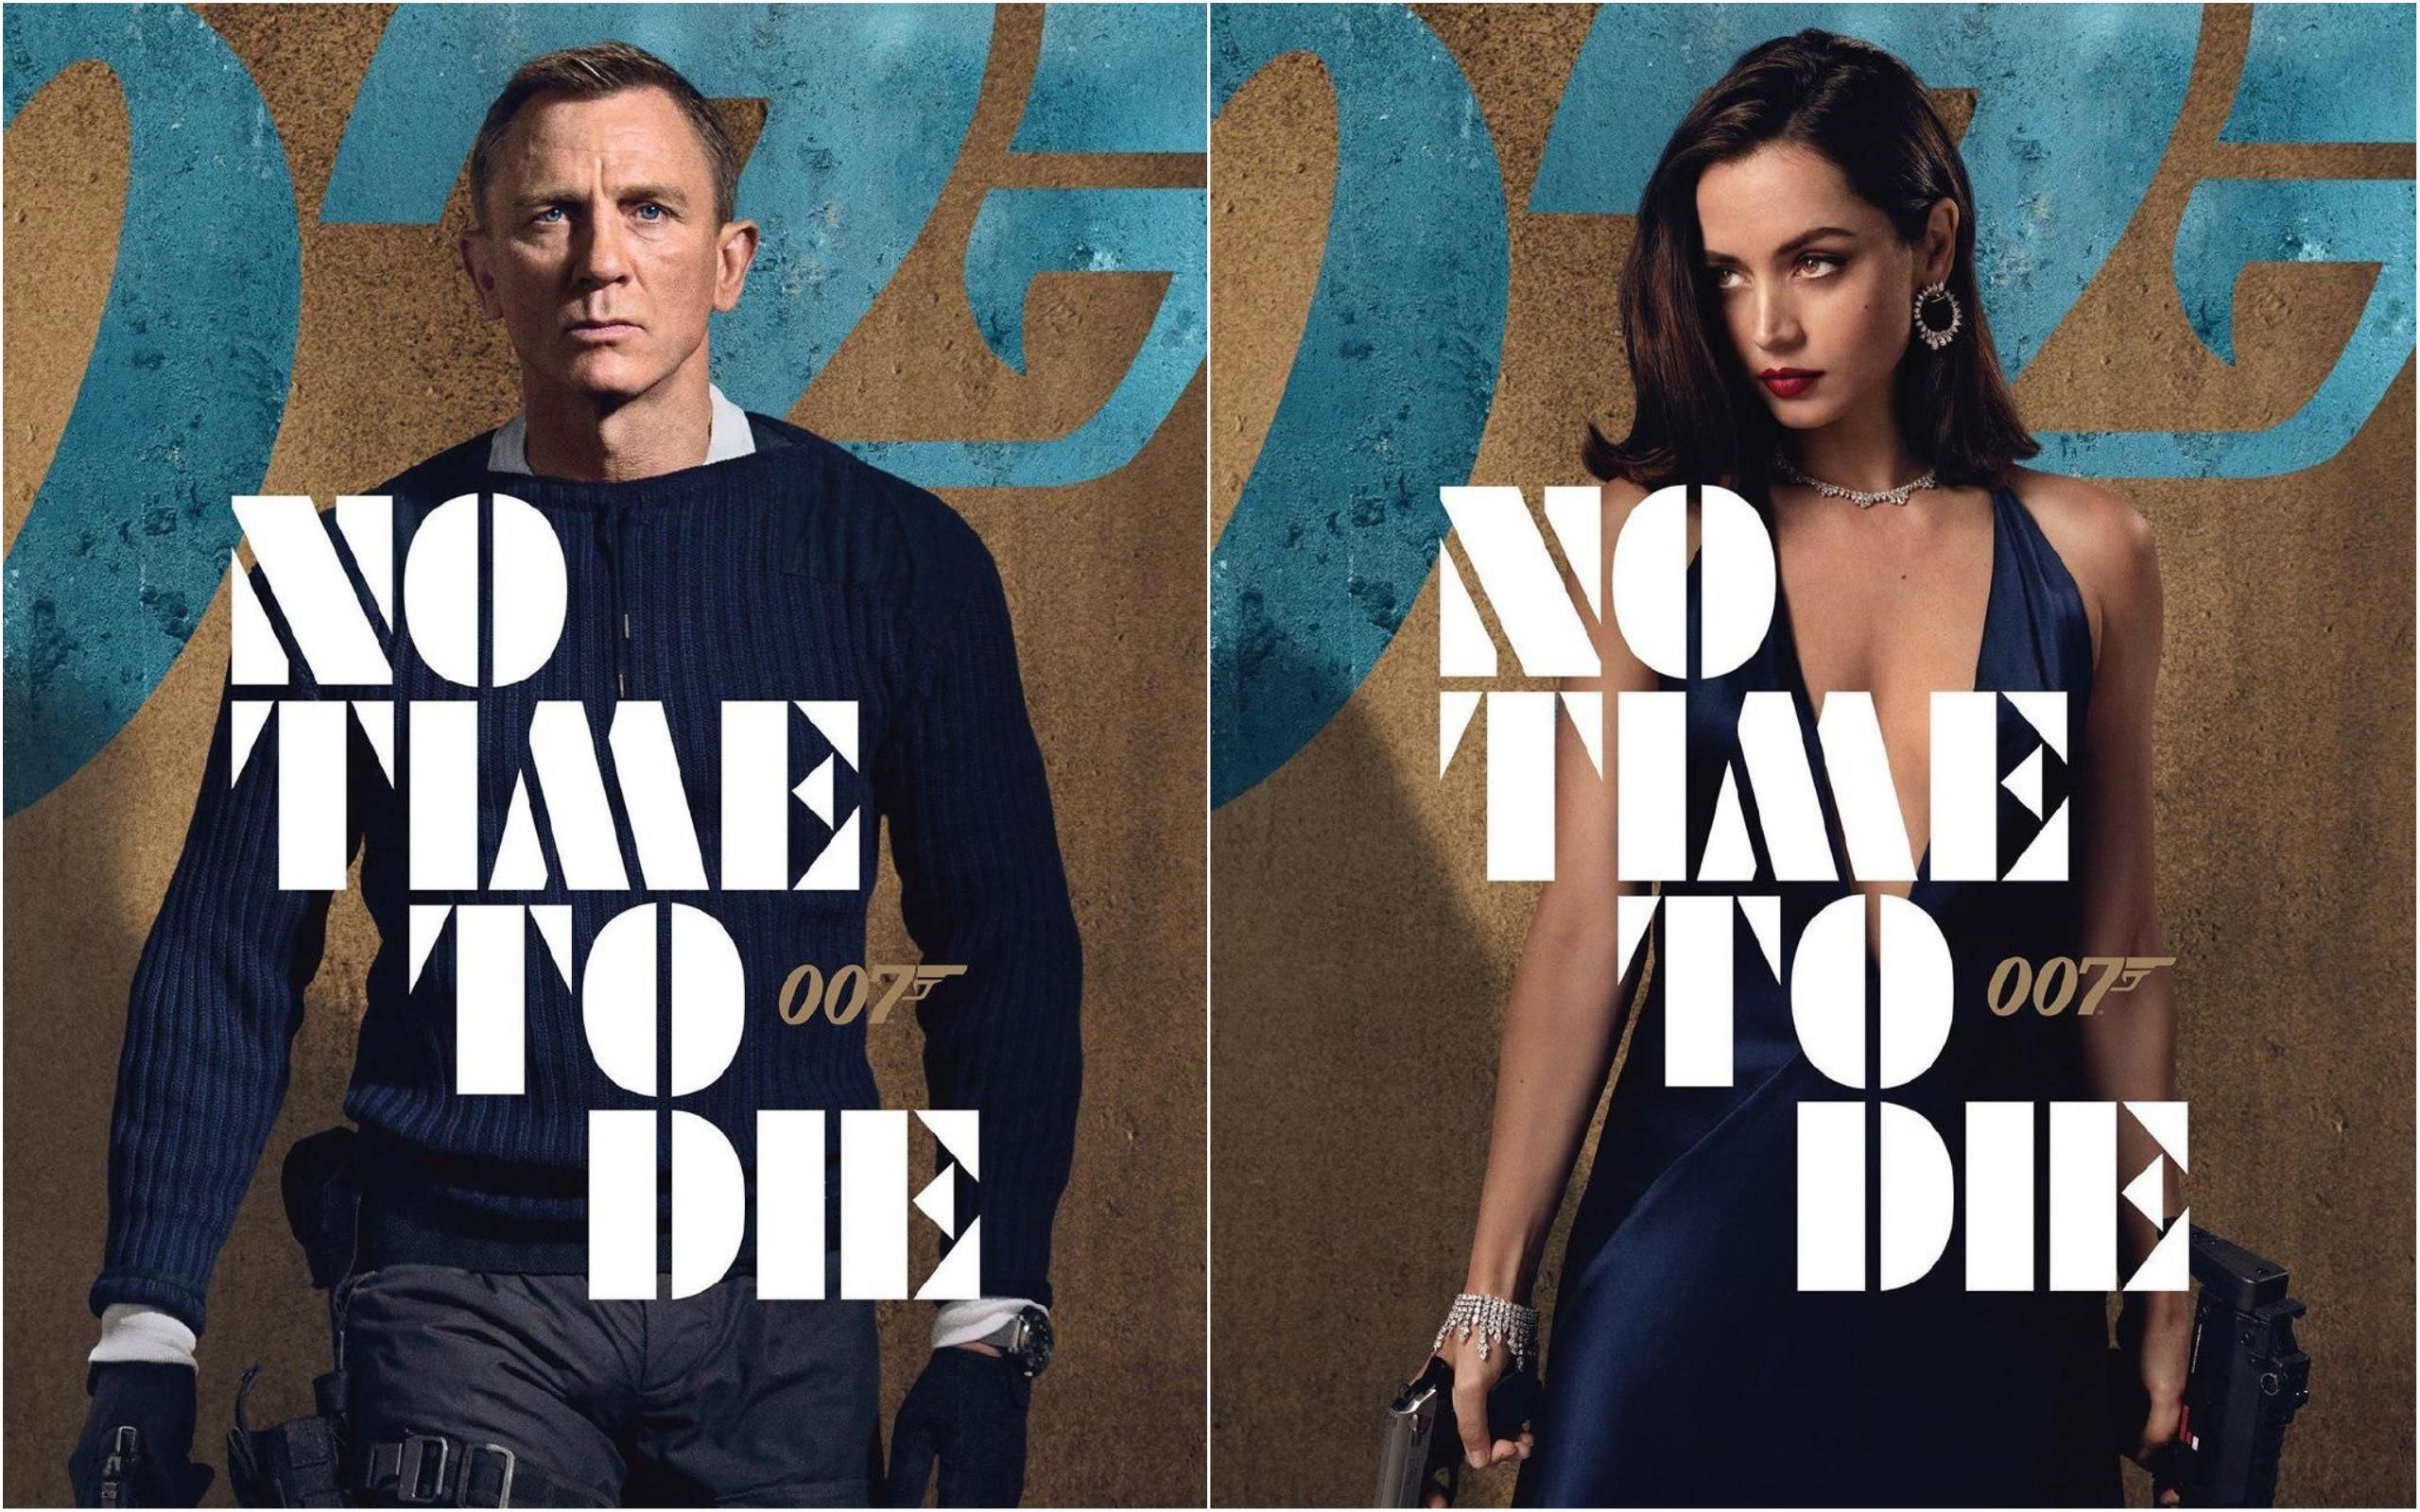 "007: Не час помирати": з'явилися приголомшливі персонажні постери до фільму про Джеймса Бонда 